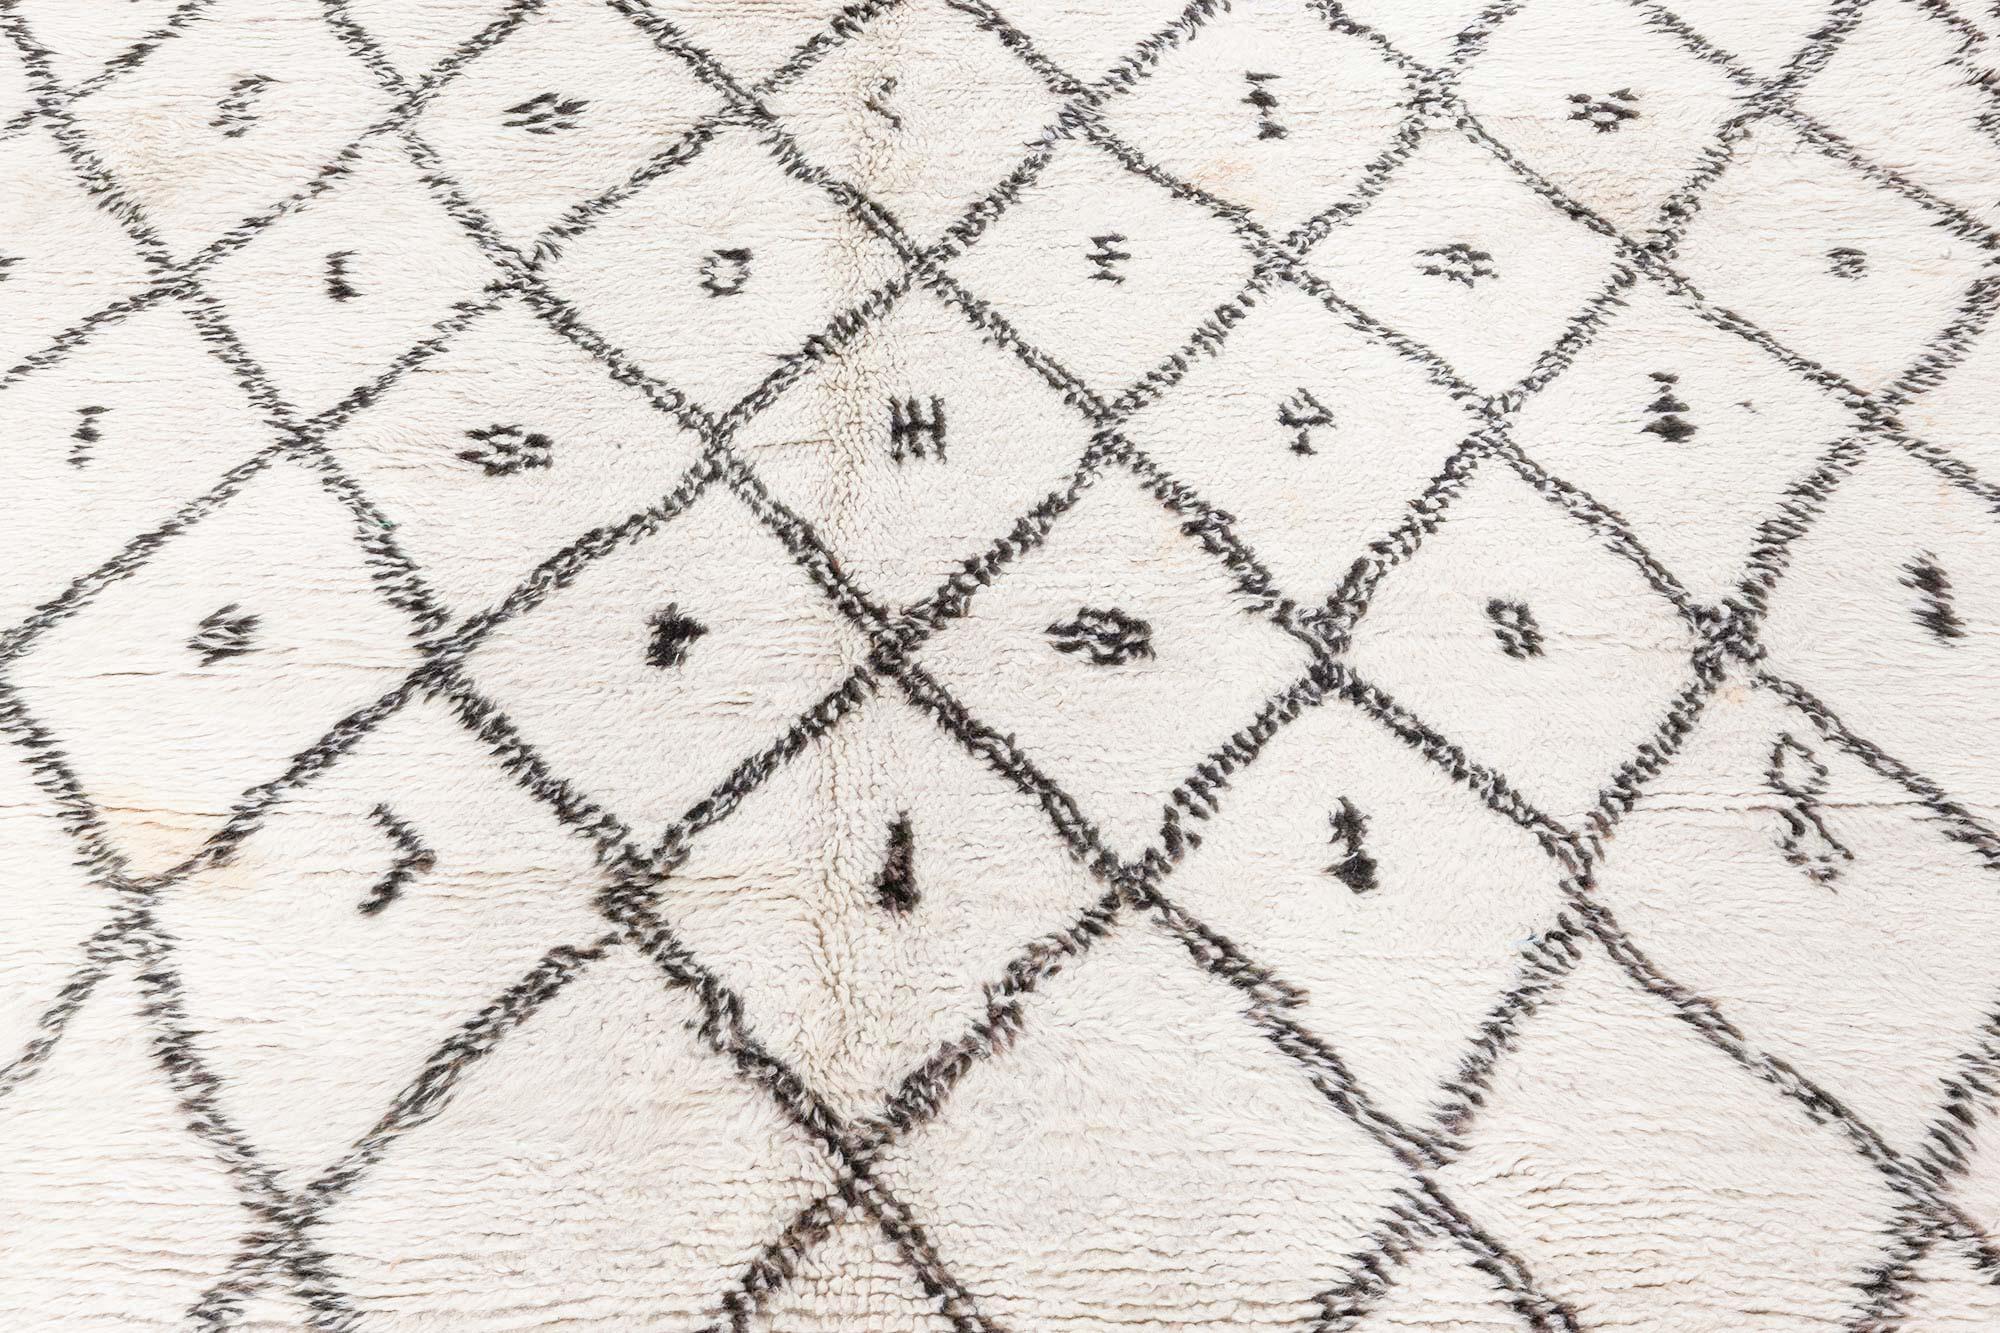 Marokkanischer Vintage-Teppich
Größe: 6'1